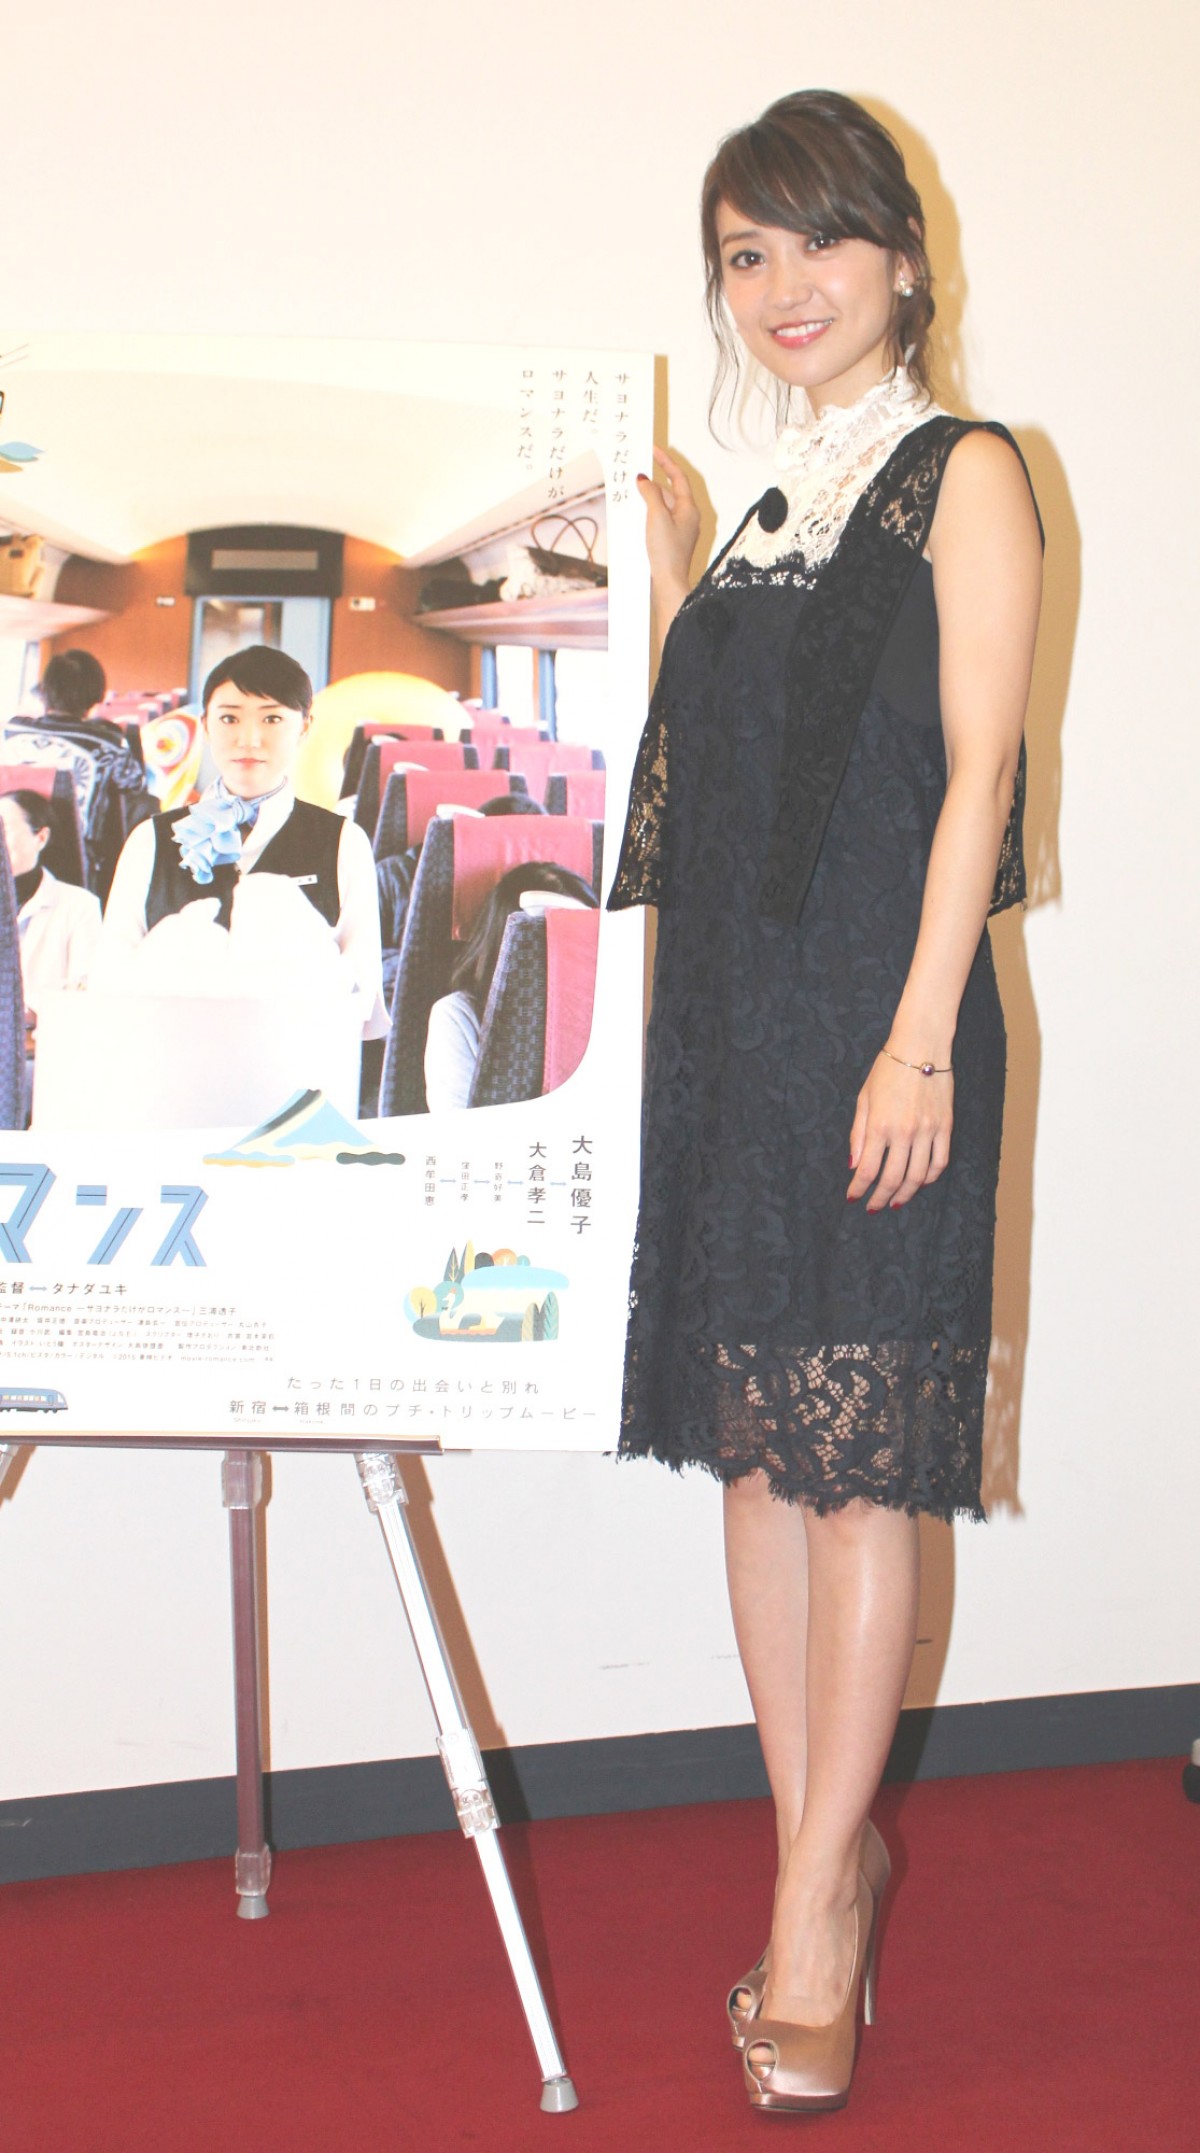 大島優子、AKB48出演作は「気になる」 女優のやりがいは “いいものを作った” 充実感